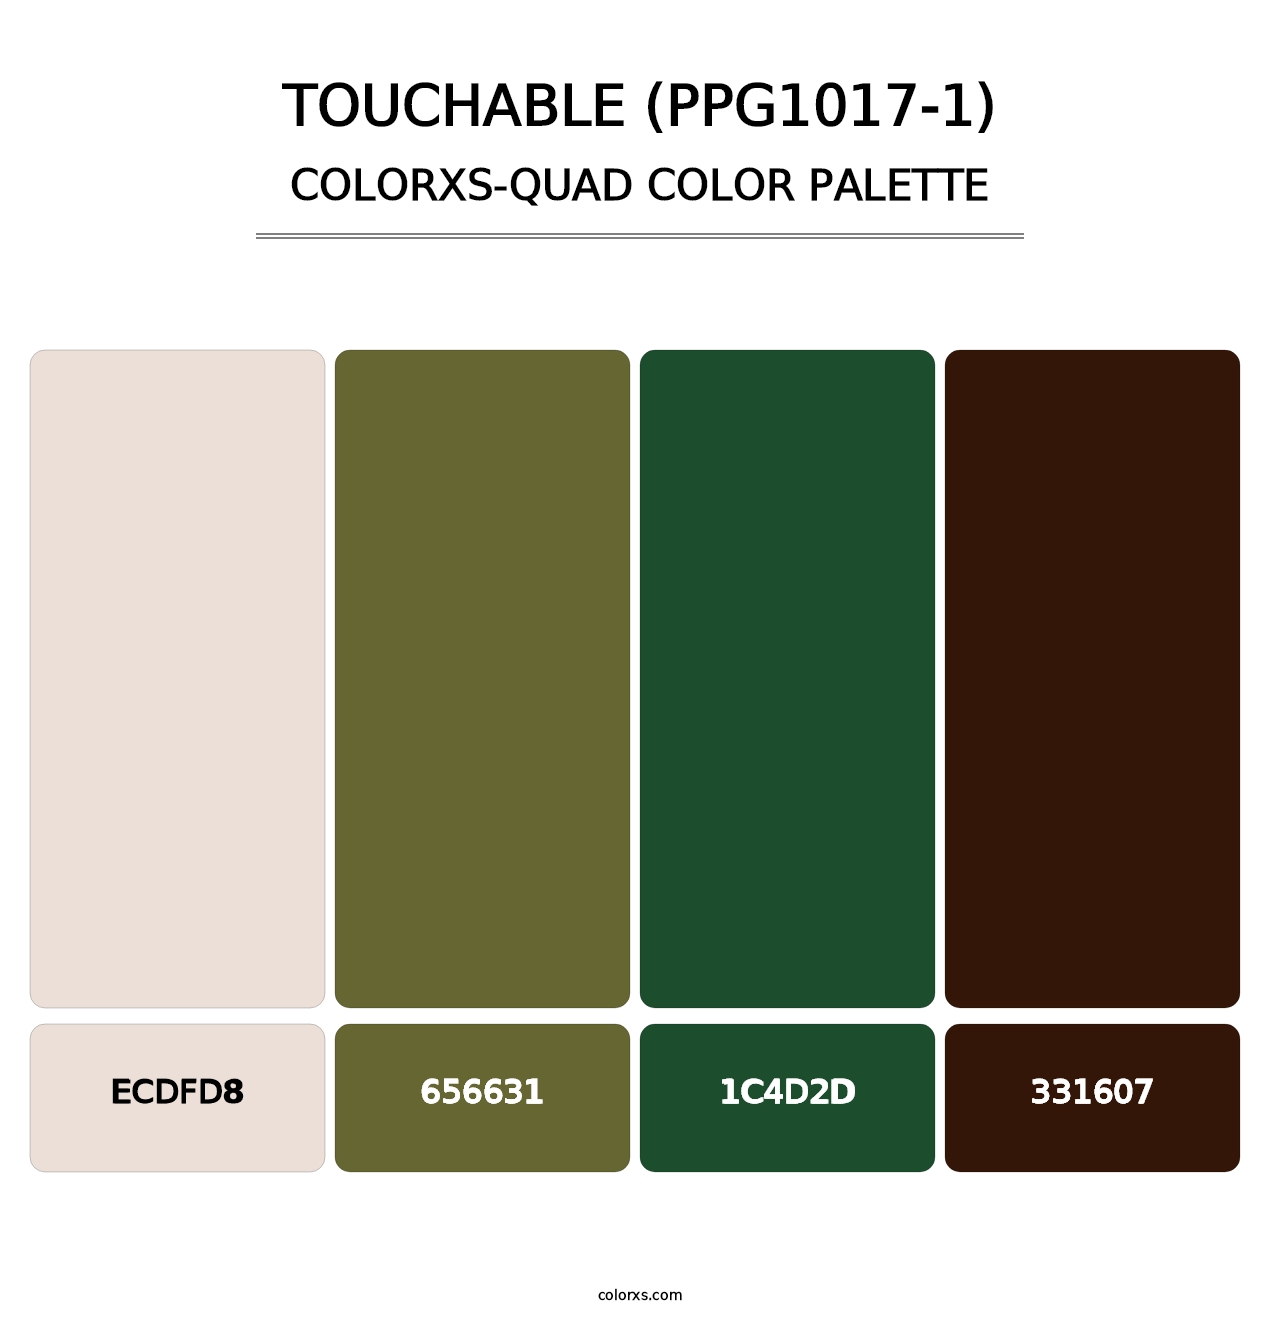 Touchable (PPG1017-1) - Colorxs Quad Palette